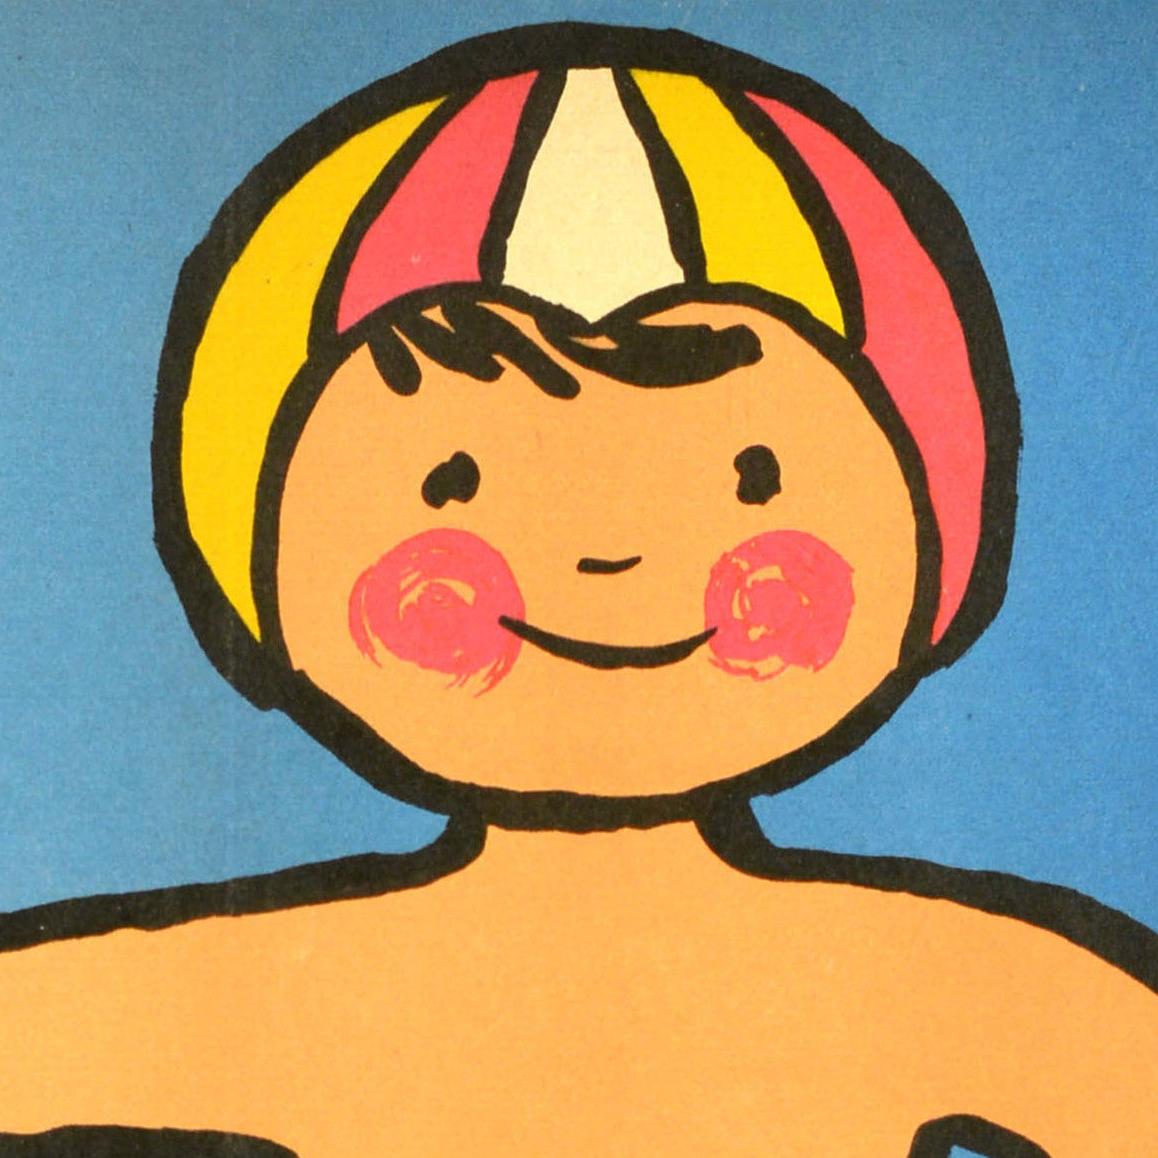 Affiche soviétique originale de propagande sanitaire - Si tu veux être en bonne santé, entraîne-toi au froid - représentant un jeune garçon souriant portant un bonnet de bain à rayures colorées, un haltère attaché à la taille et tenant un bâton de